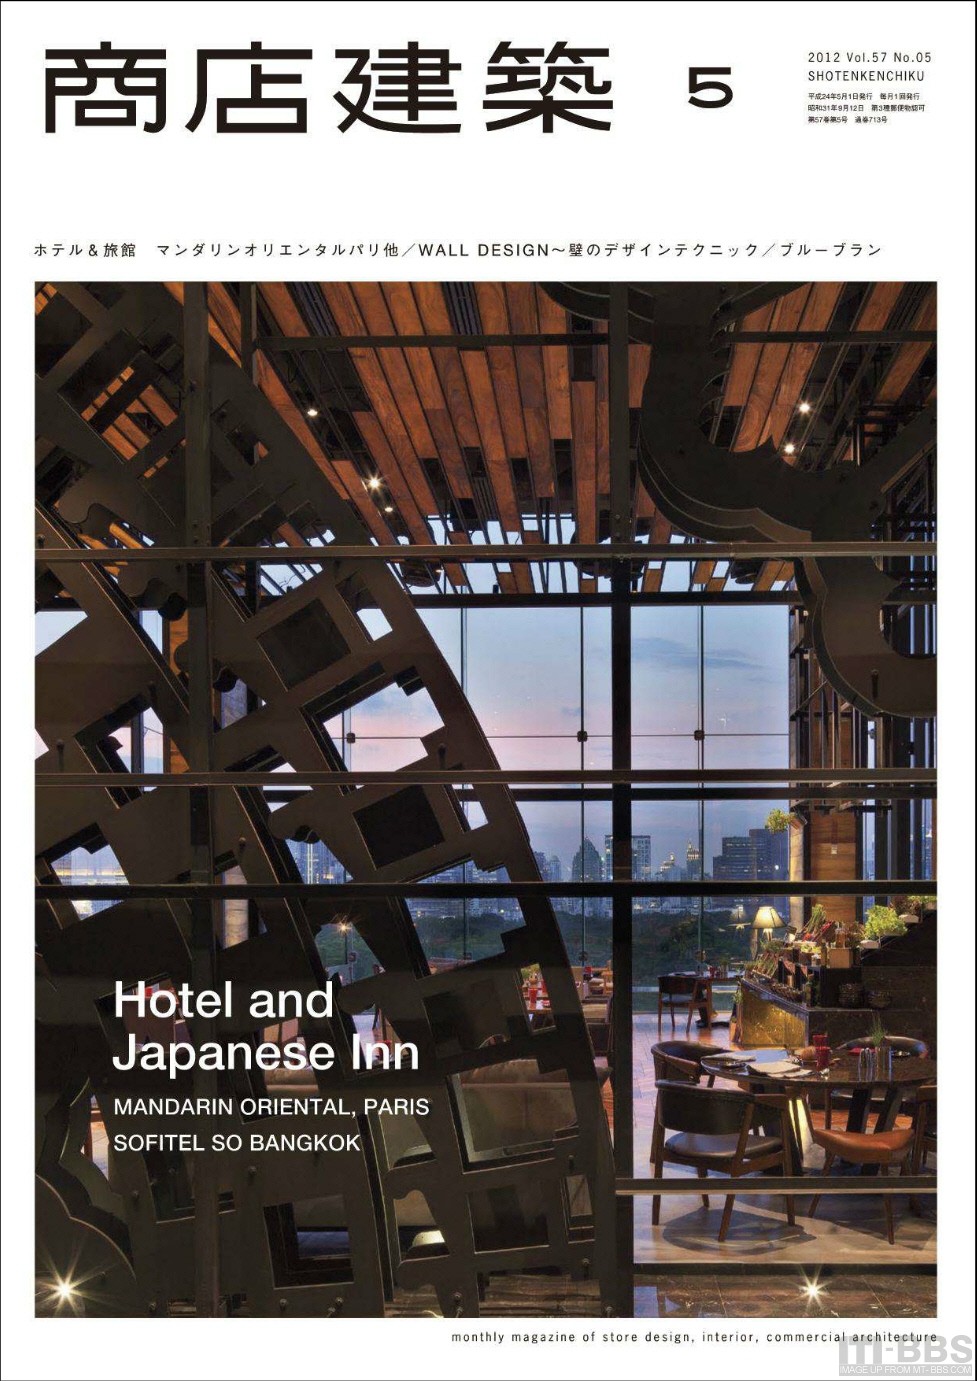 2012日本商店建築全集+SHOTENKENCHIKU+Magazine+January_5